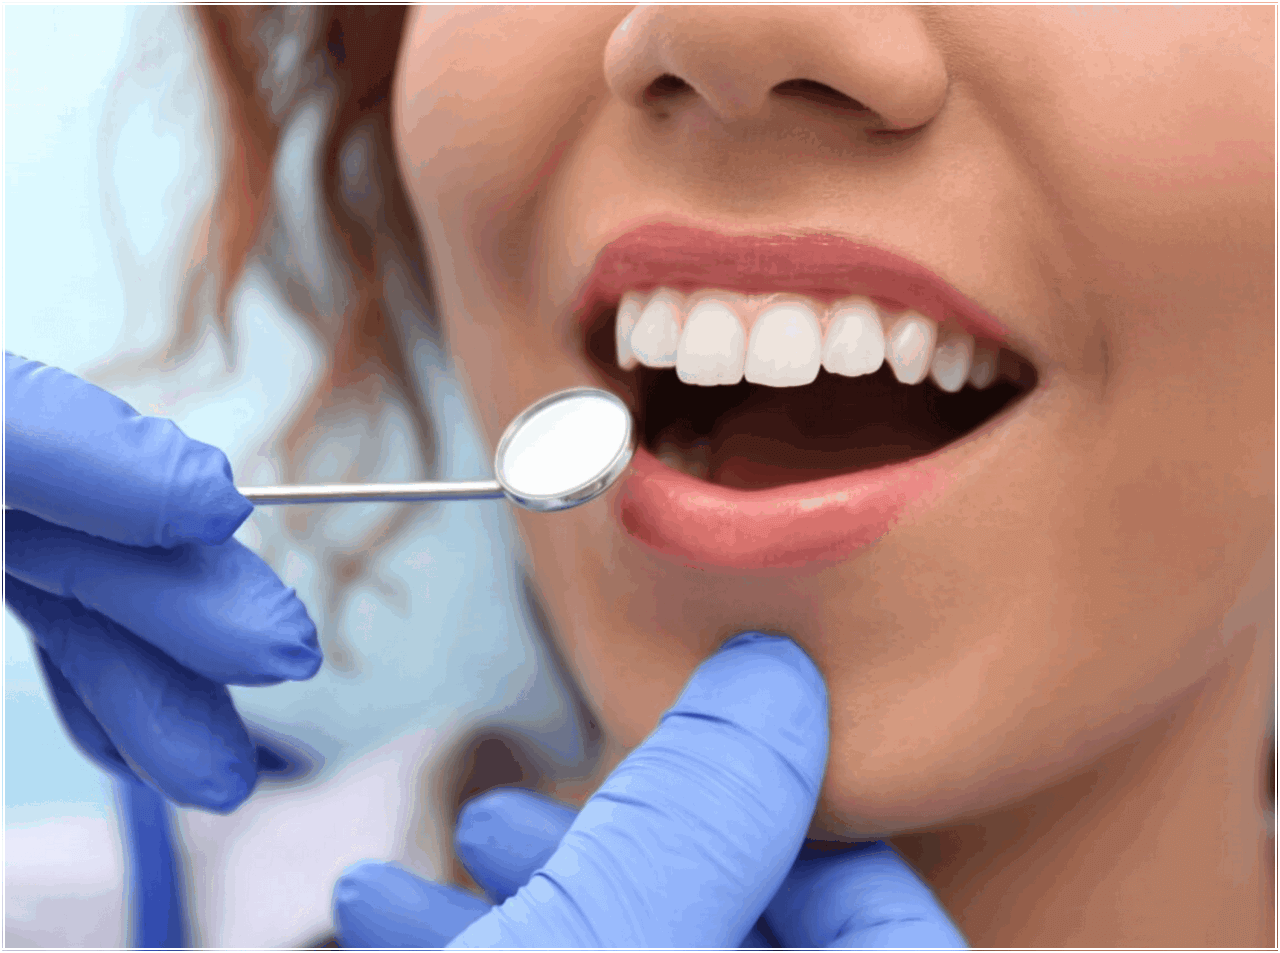 Проф гигиены полости рта. Профгигиена (ультразвук + Air-Flow). Профессиональная гигиена полости рта. Гигиена полости рта в стоматологии. Профессиональная гигиена полости рта в стоматологии.